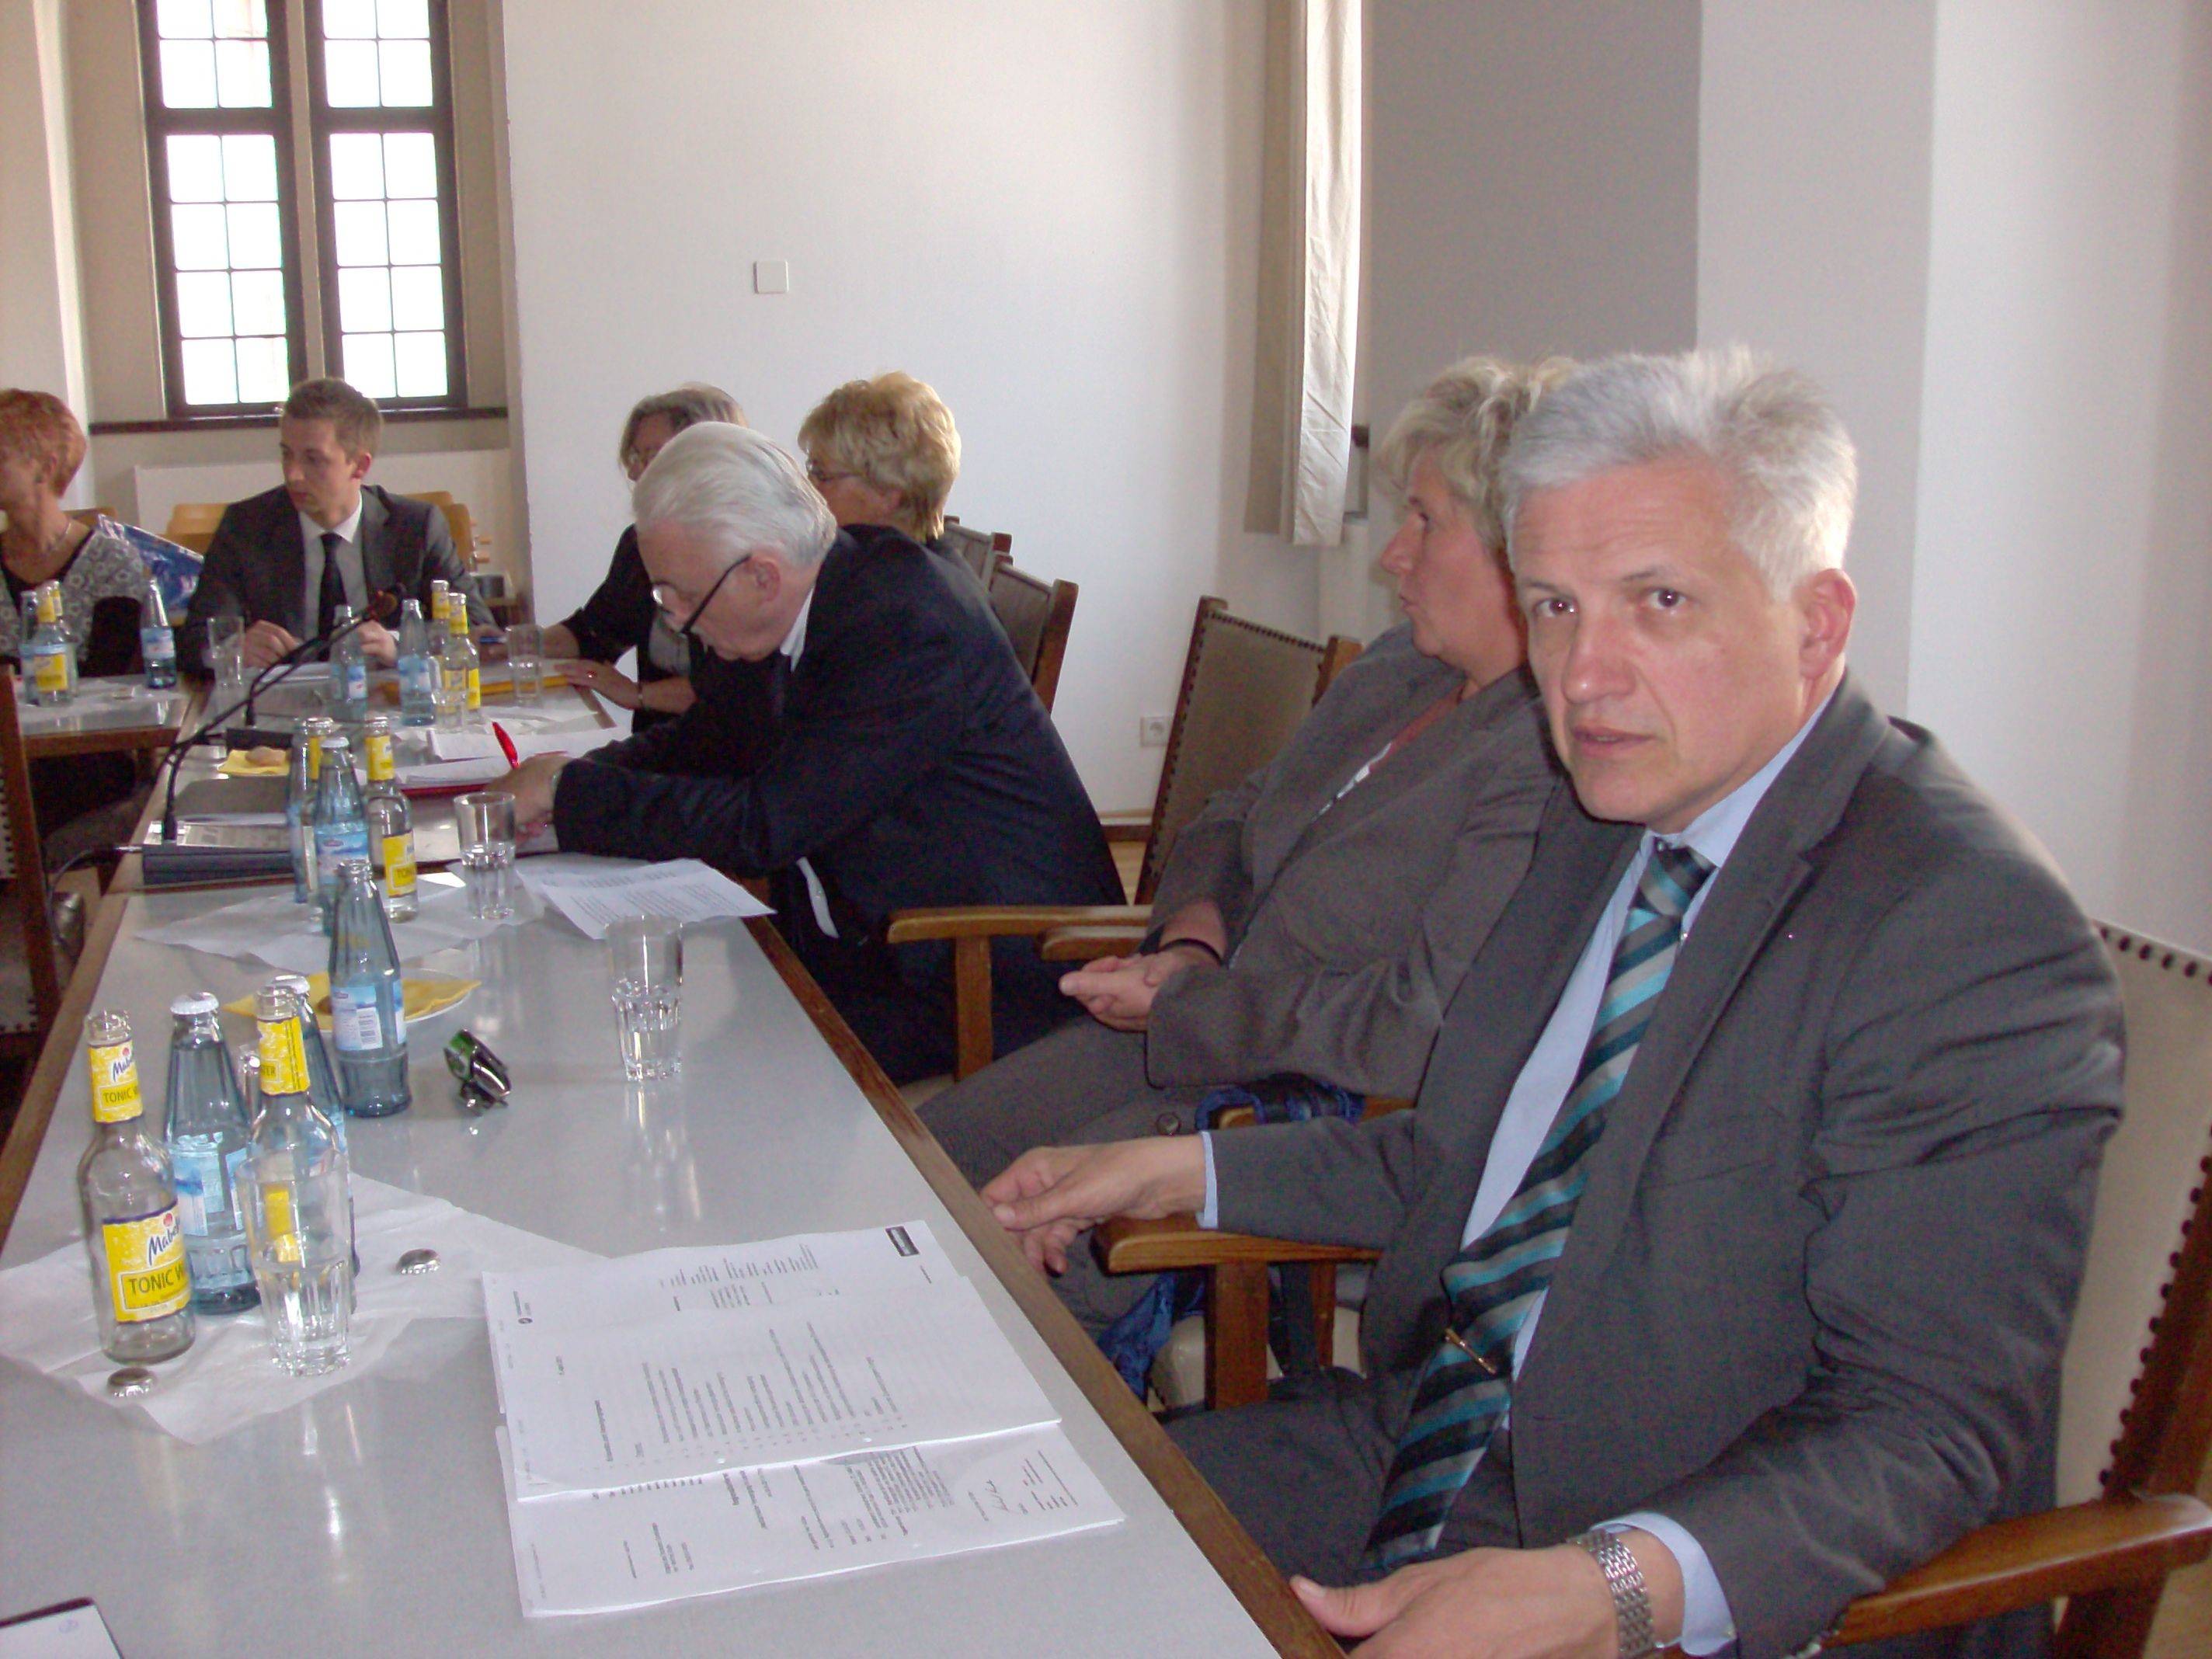 Manfred Kolbe (r.) bei der Regionalkonferenz mit Torgau`s OBM Andrea Staude (m.) und Landrat Michael Czupalla (l.)